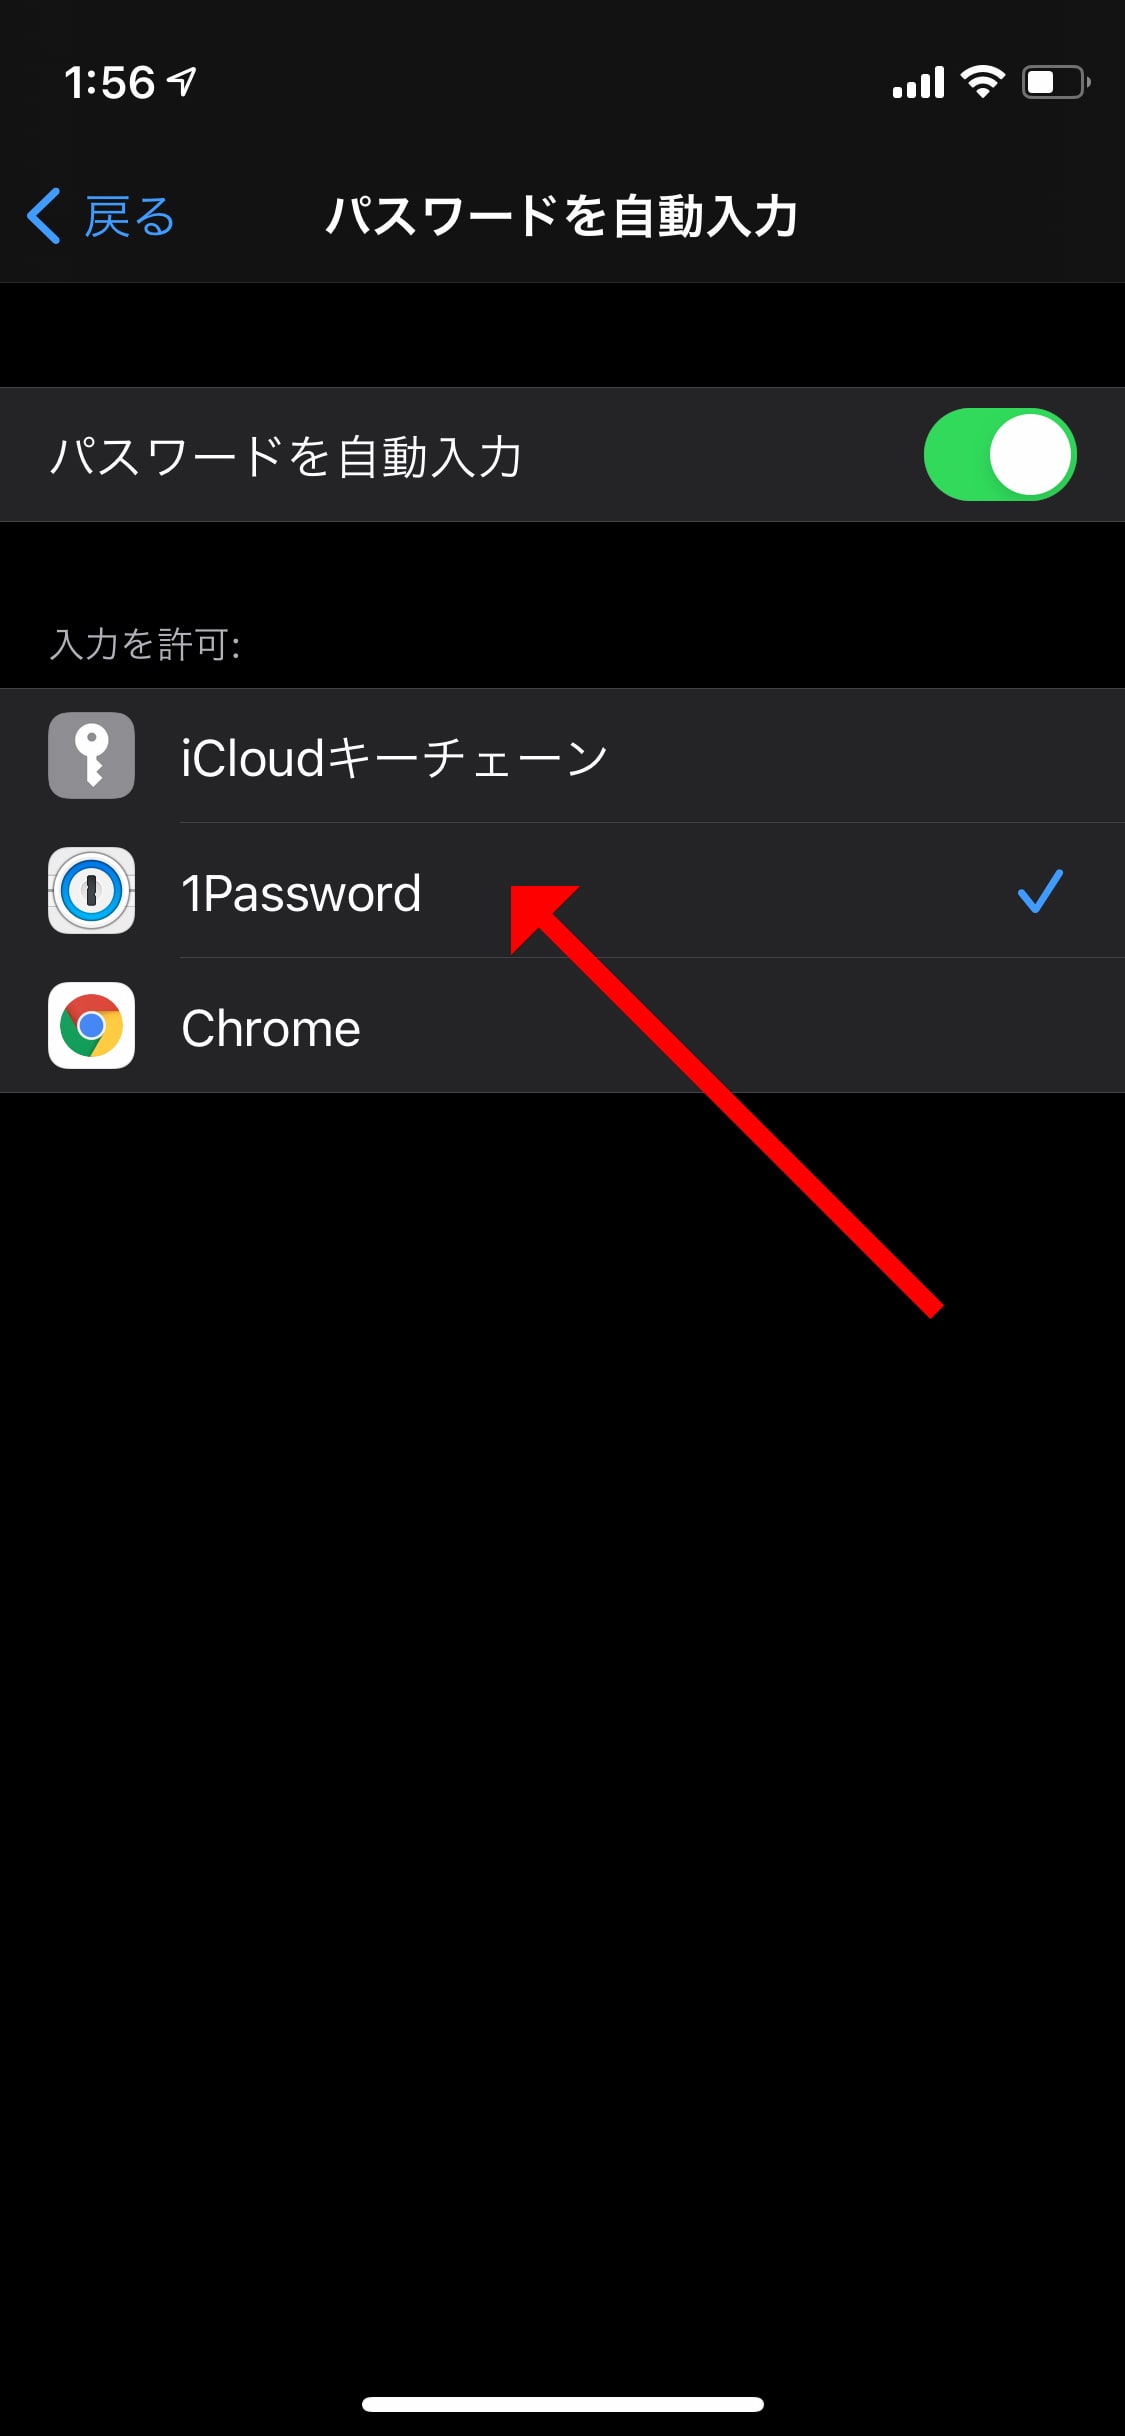 ログイン時に1Passwordを参照するようにiPhoneの設定を変更